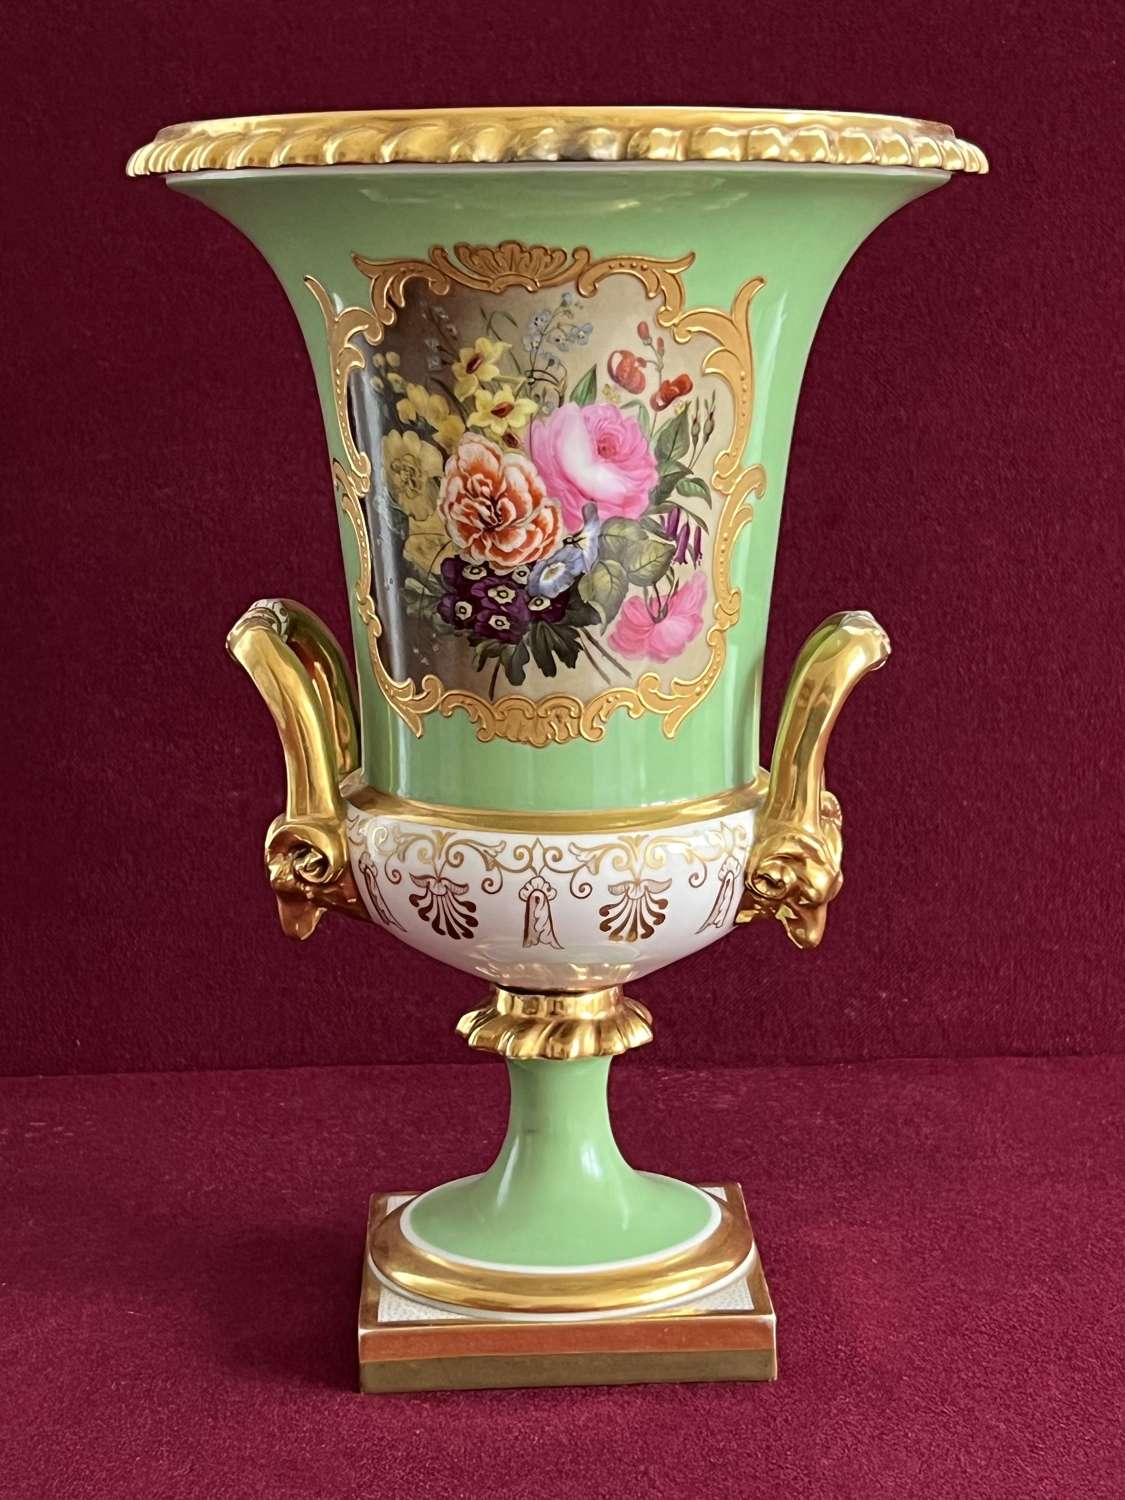 A Flight, Barr & Barr Worcester Porcelain Campana shape Vase c.1825